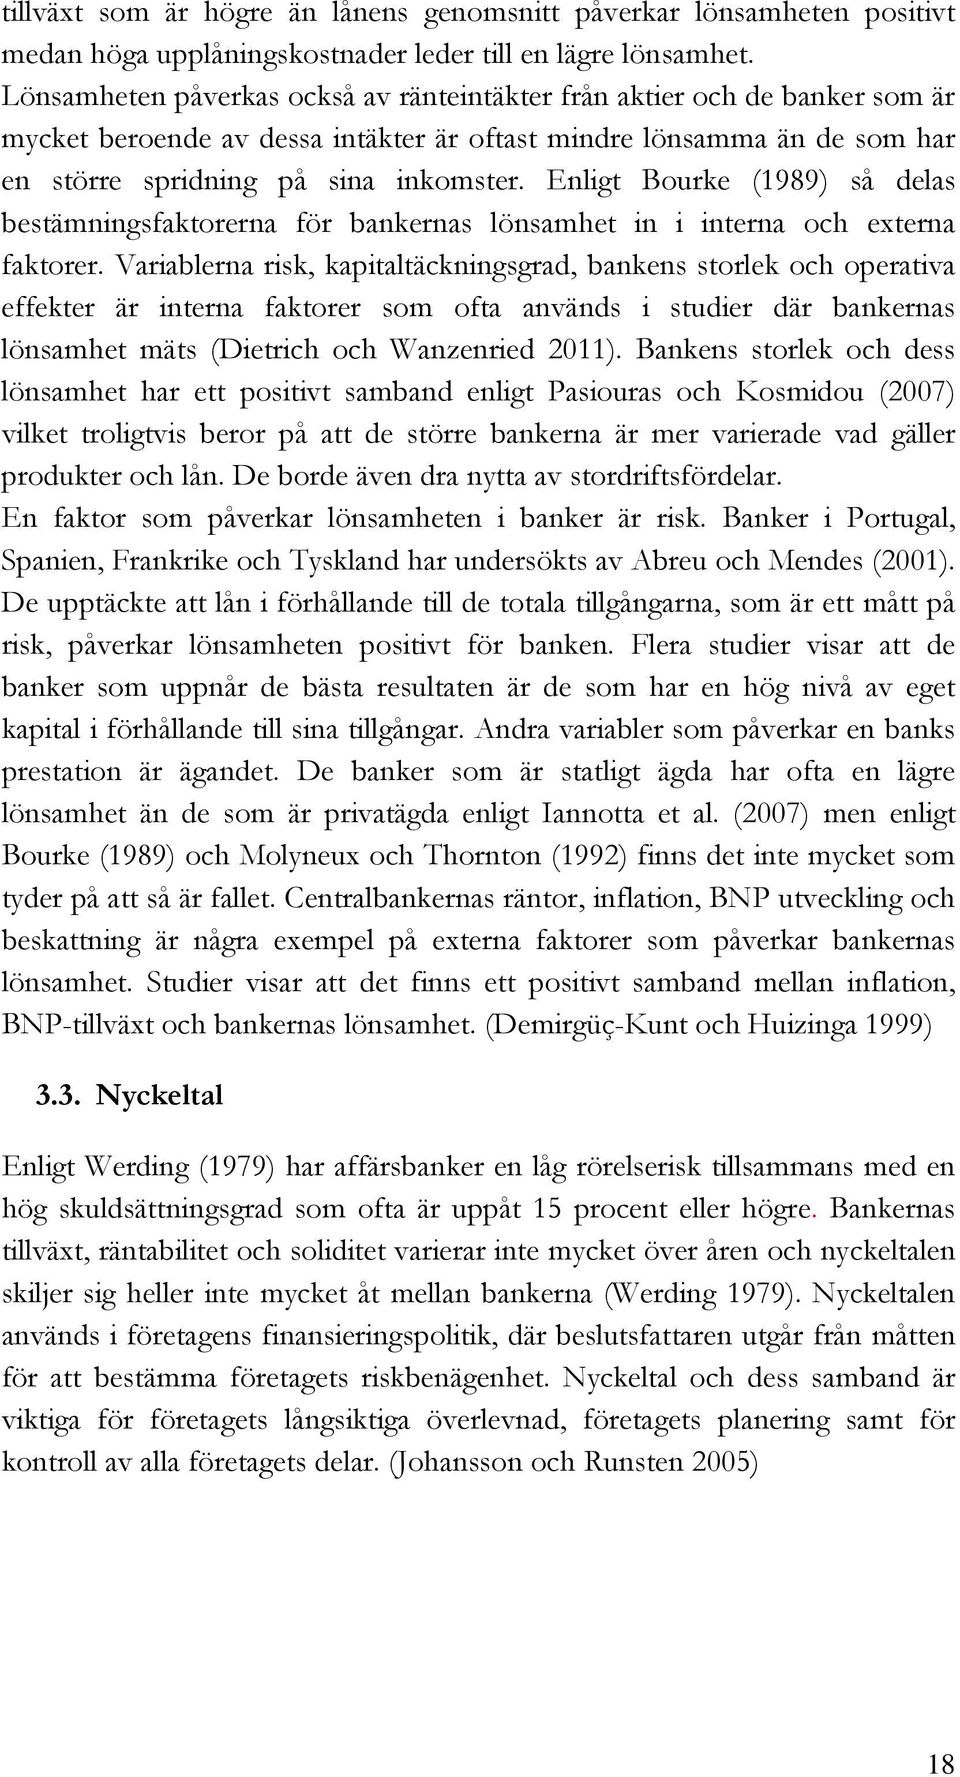 Enligt Bourke (1989) så delas bestämningsfaktorerna för bankernas lönsamhet in i interna och externa faktorer.